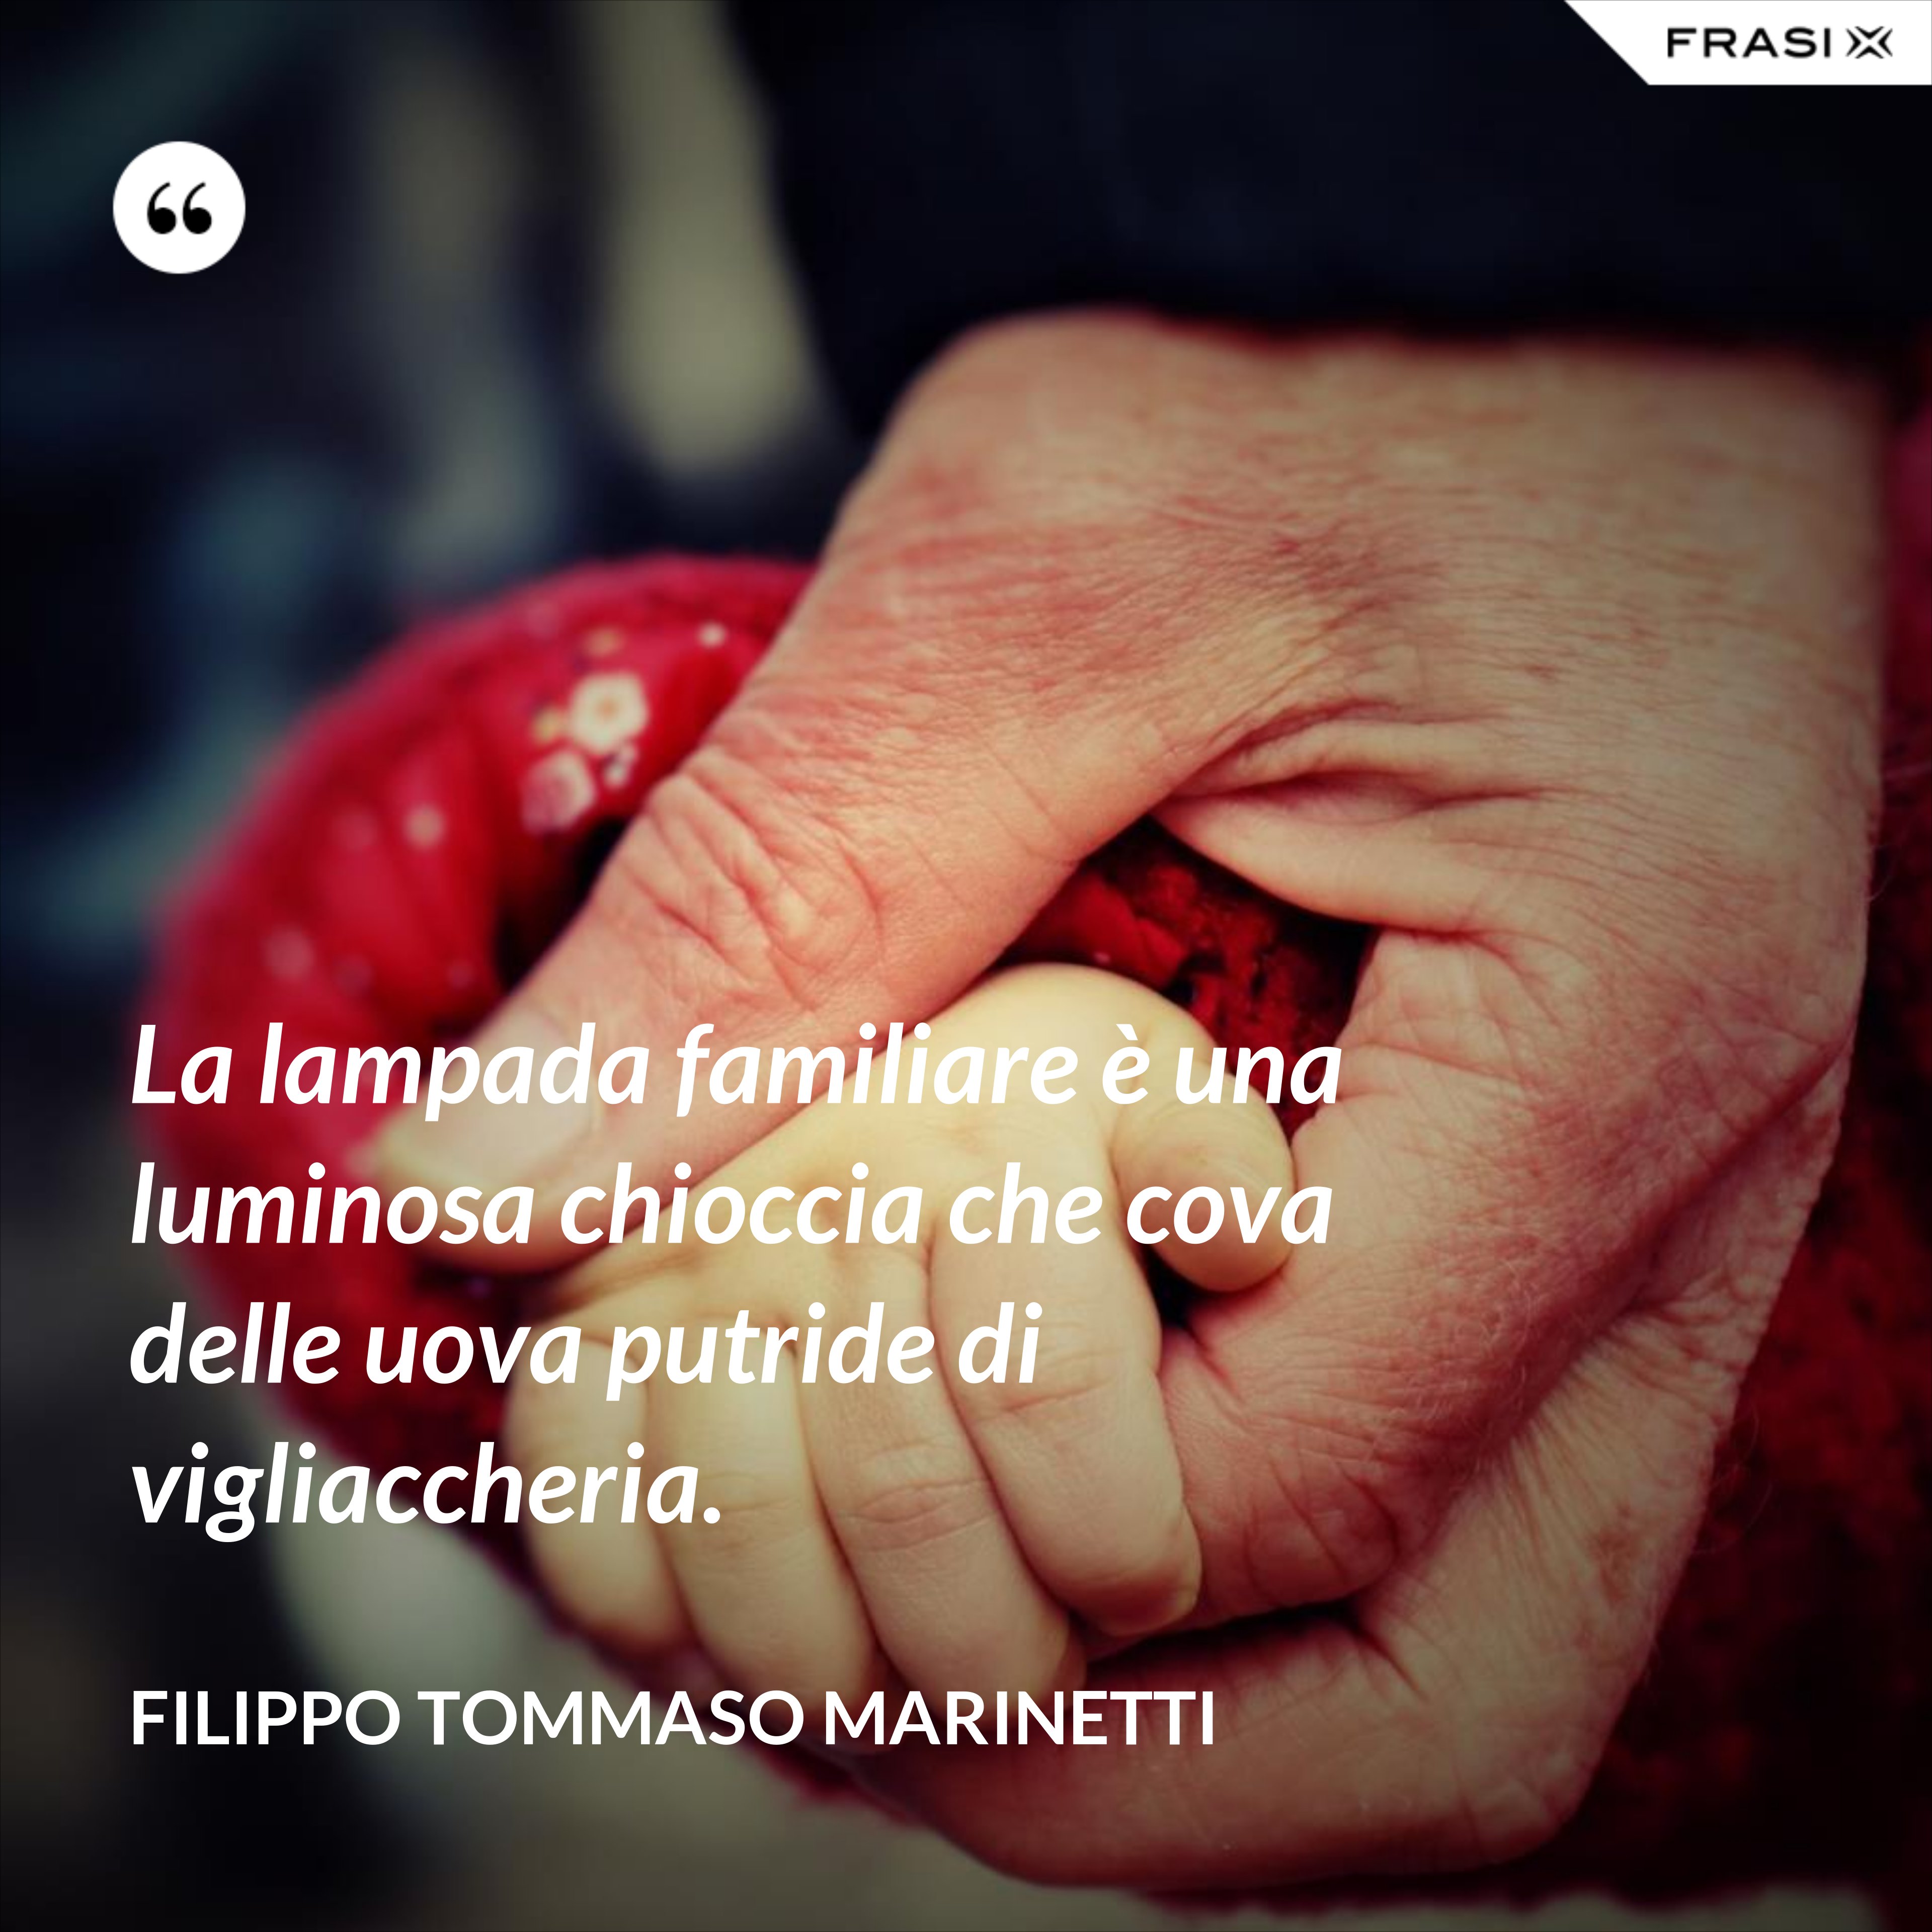 La lampada familiare è una luminosa chioccia che cova delle uova putride di vigliaccheria. - Filippo Tommaso Marinetti